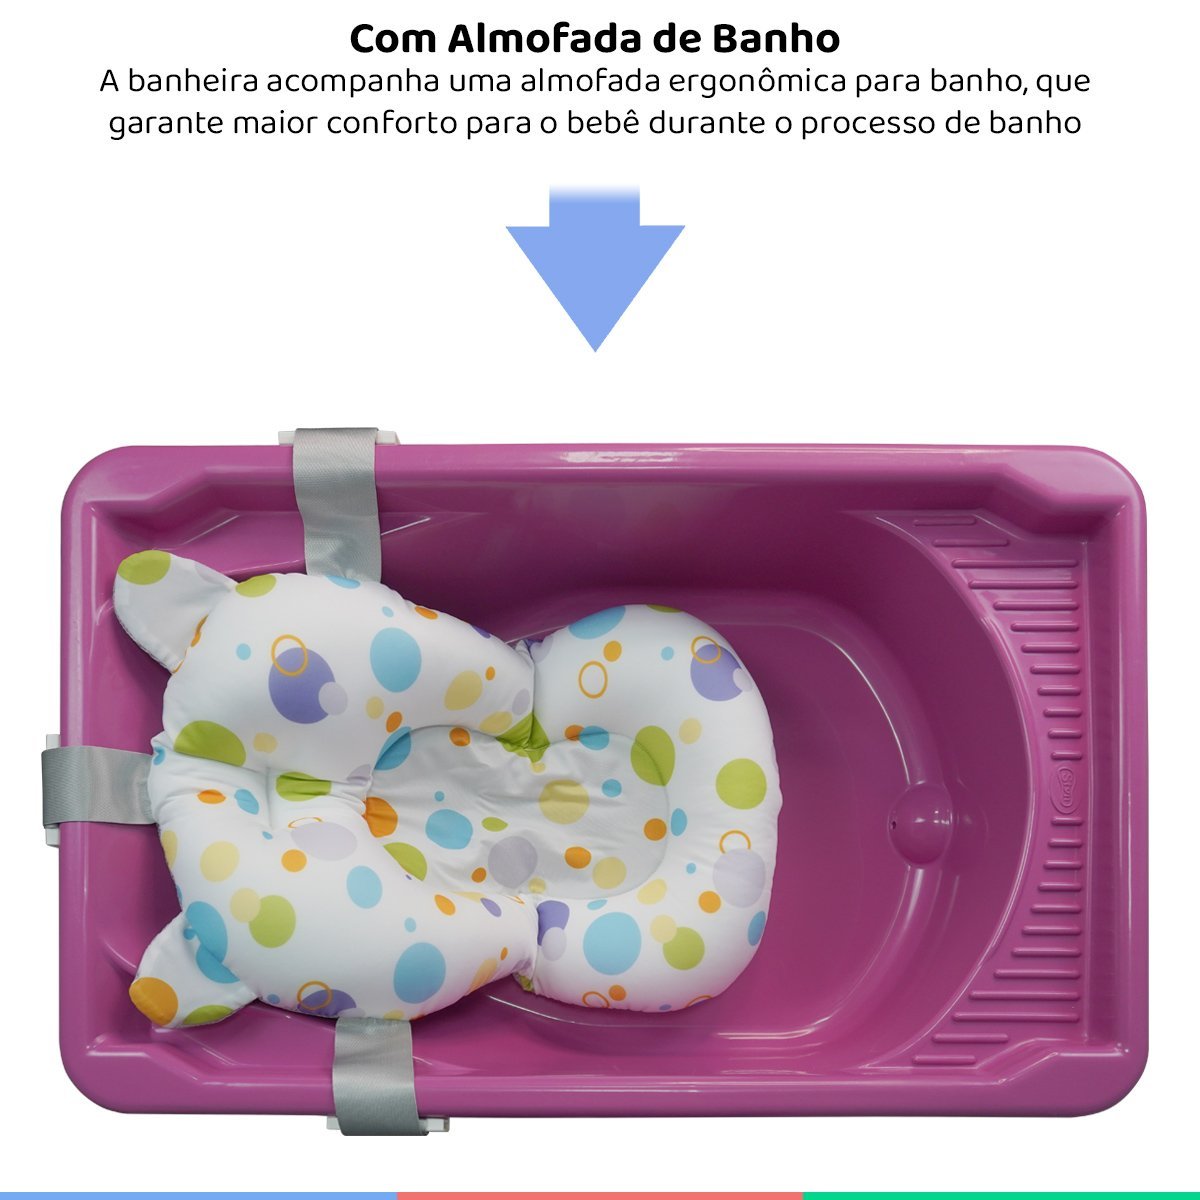 Banheira Bebe Banho Infantil Rígida Com Suporte Até 20 Kg Styll Baby + Almofada de Banho Universal B - 2